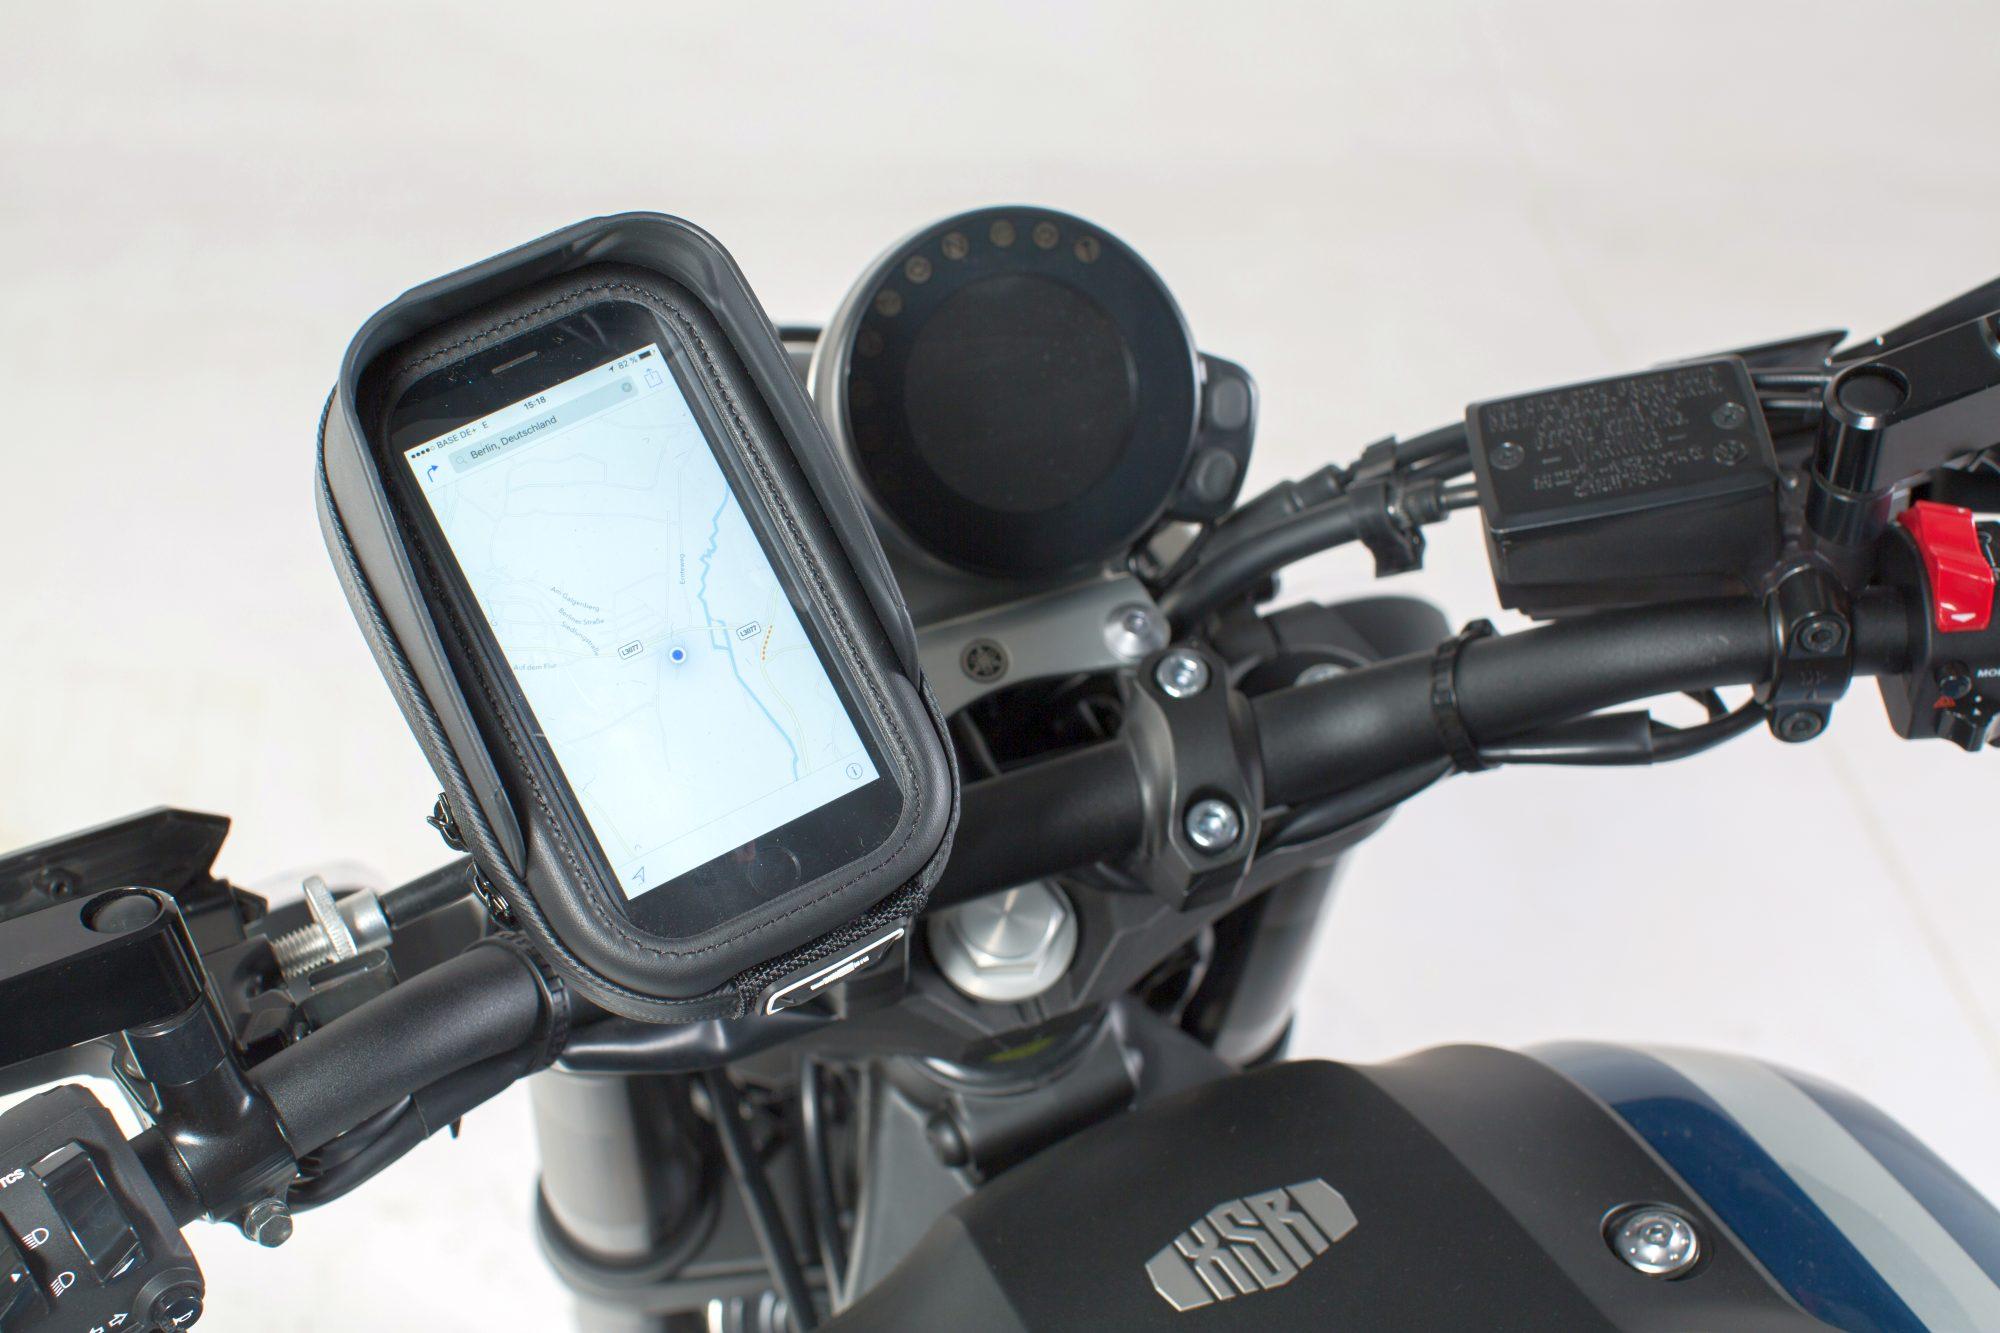 Купить держатель для мотоцикла. SW-MOTECH GPS. Чехол для телефона на руль мотоцикла BMW f800s. Крепление навигатора на мотоцикл Navi GPS. Garmin чехол для навигатора на руль мотоцикла.